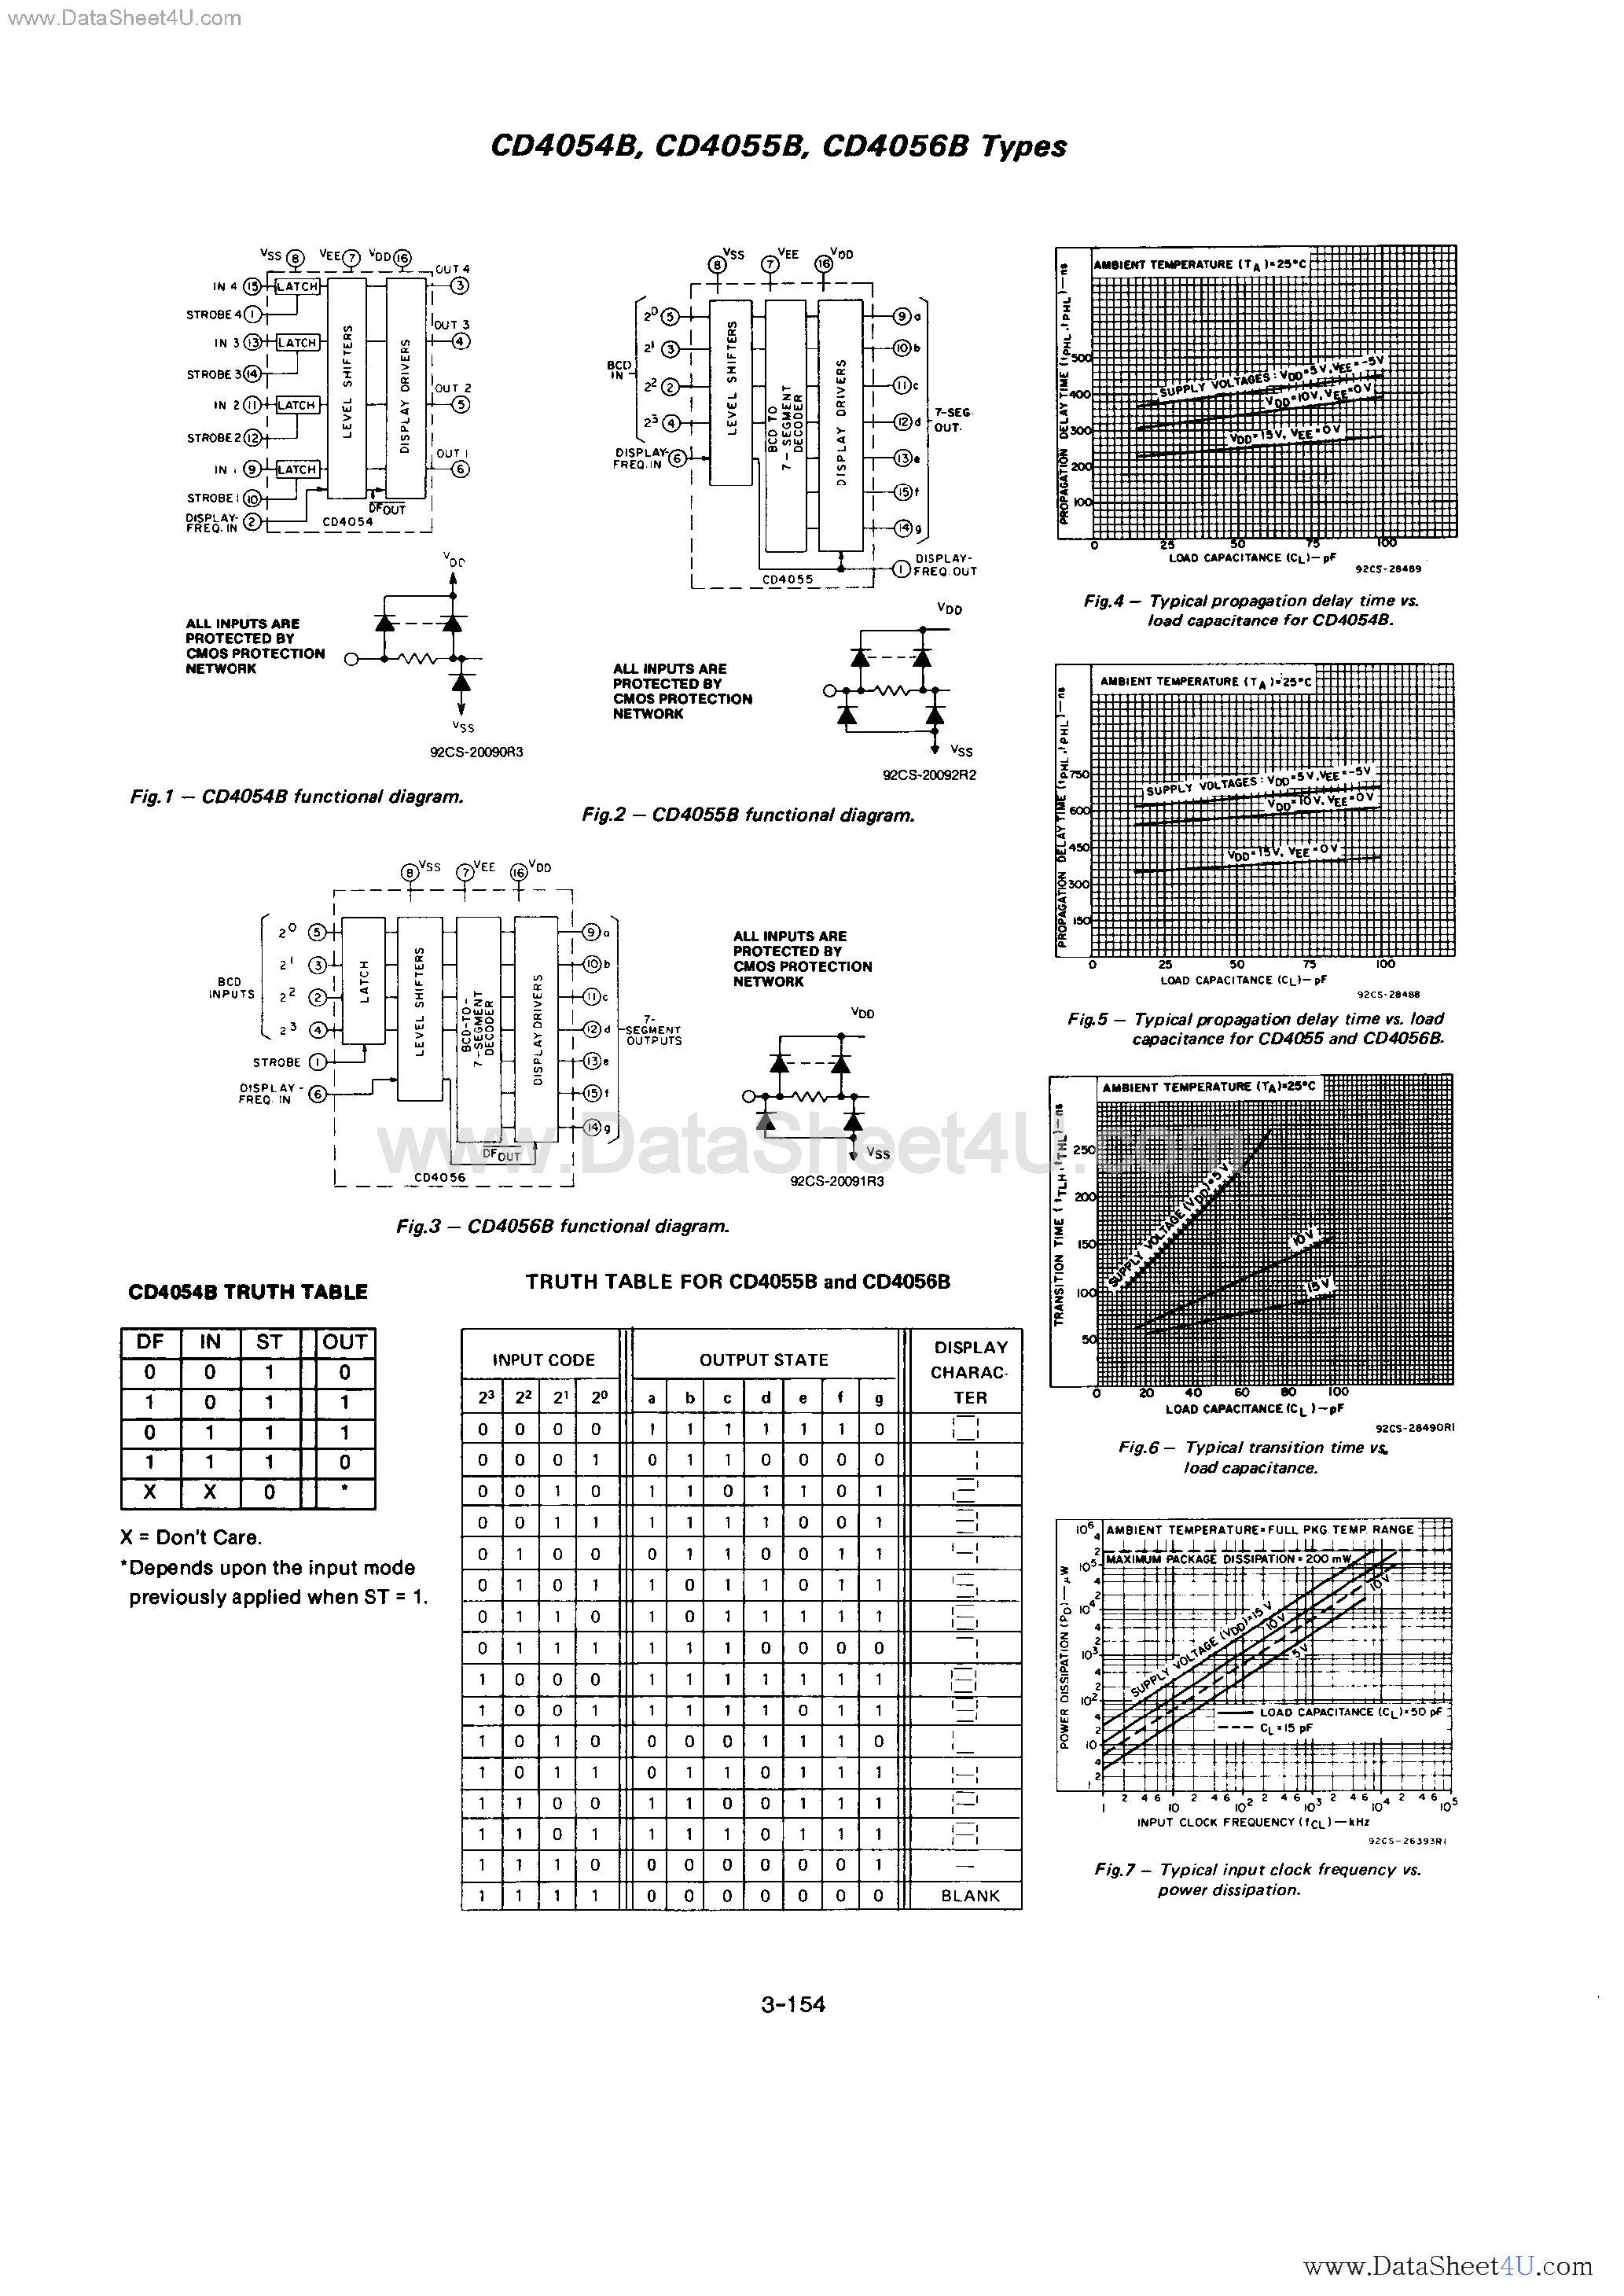 Datasheet CD4054B - (CD4054B - CD4056B) CMOS LCD Drivers page 2